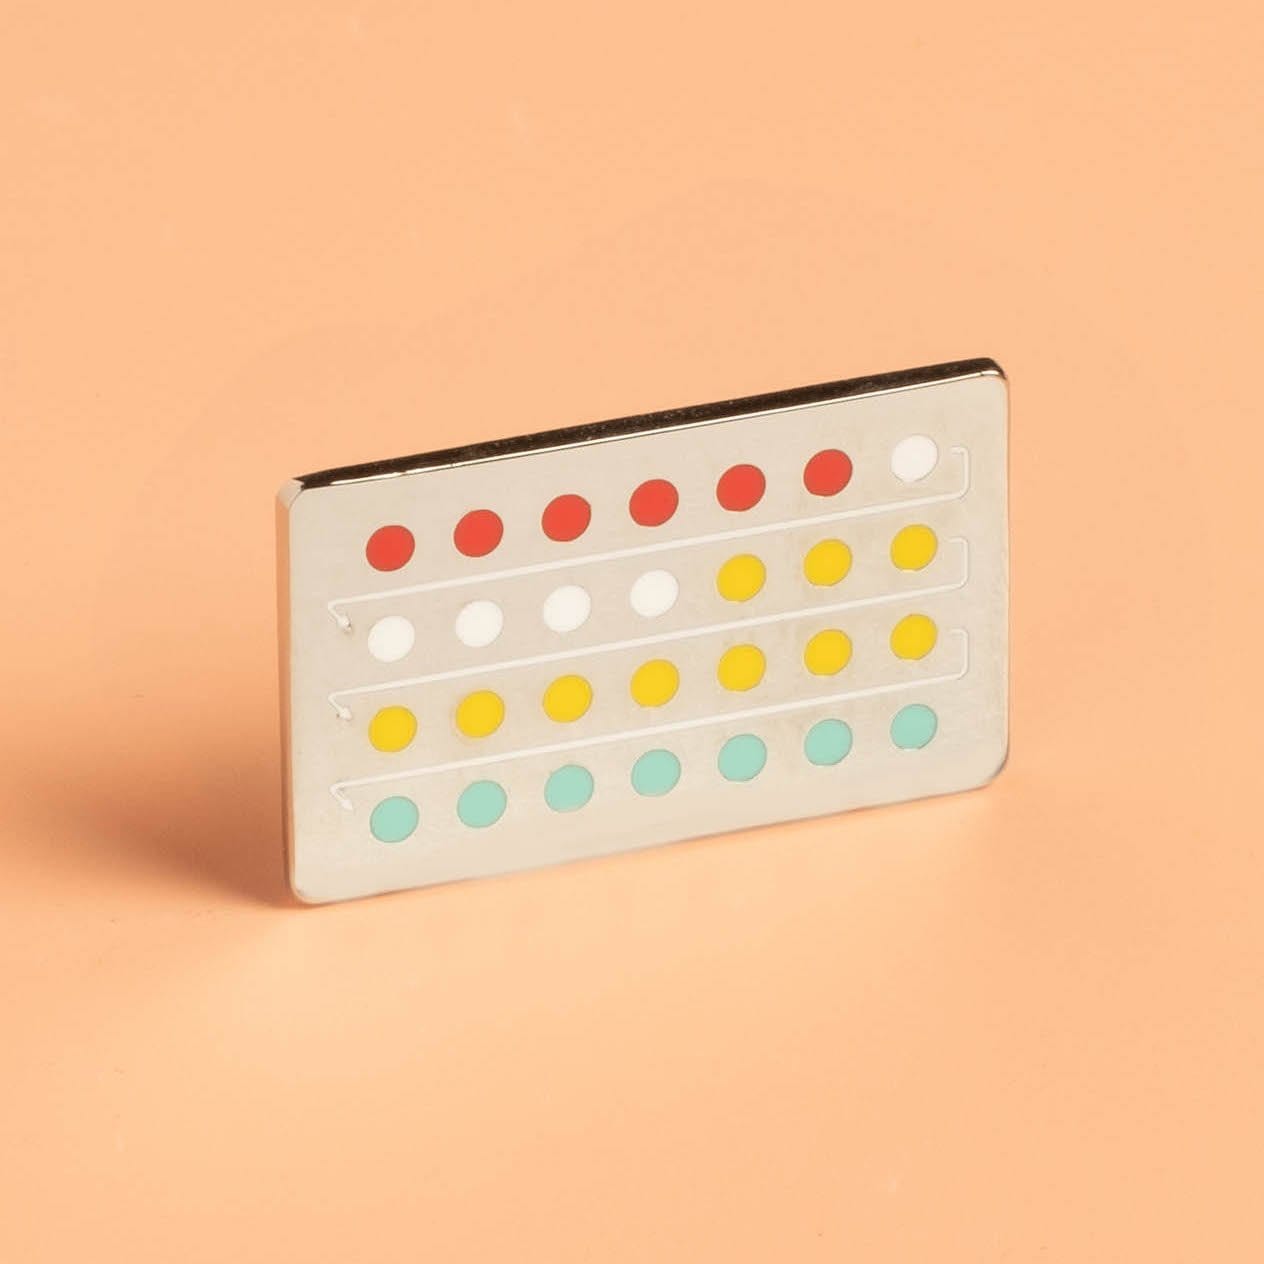 The Pill Pin - Calendar Pack